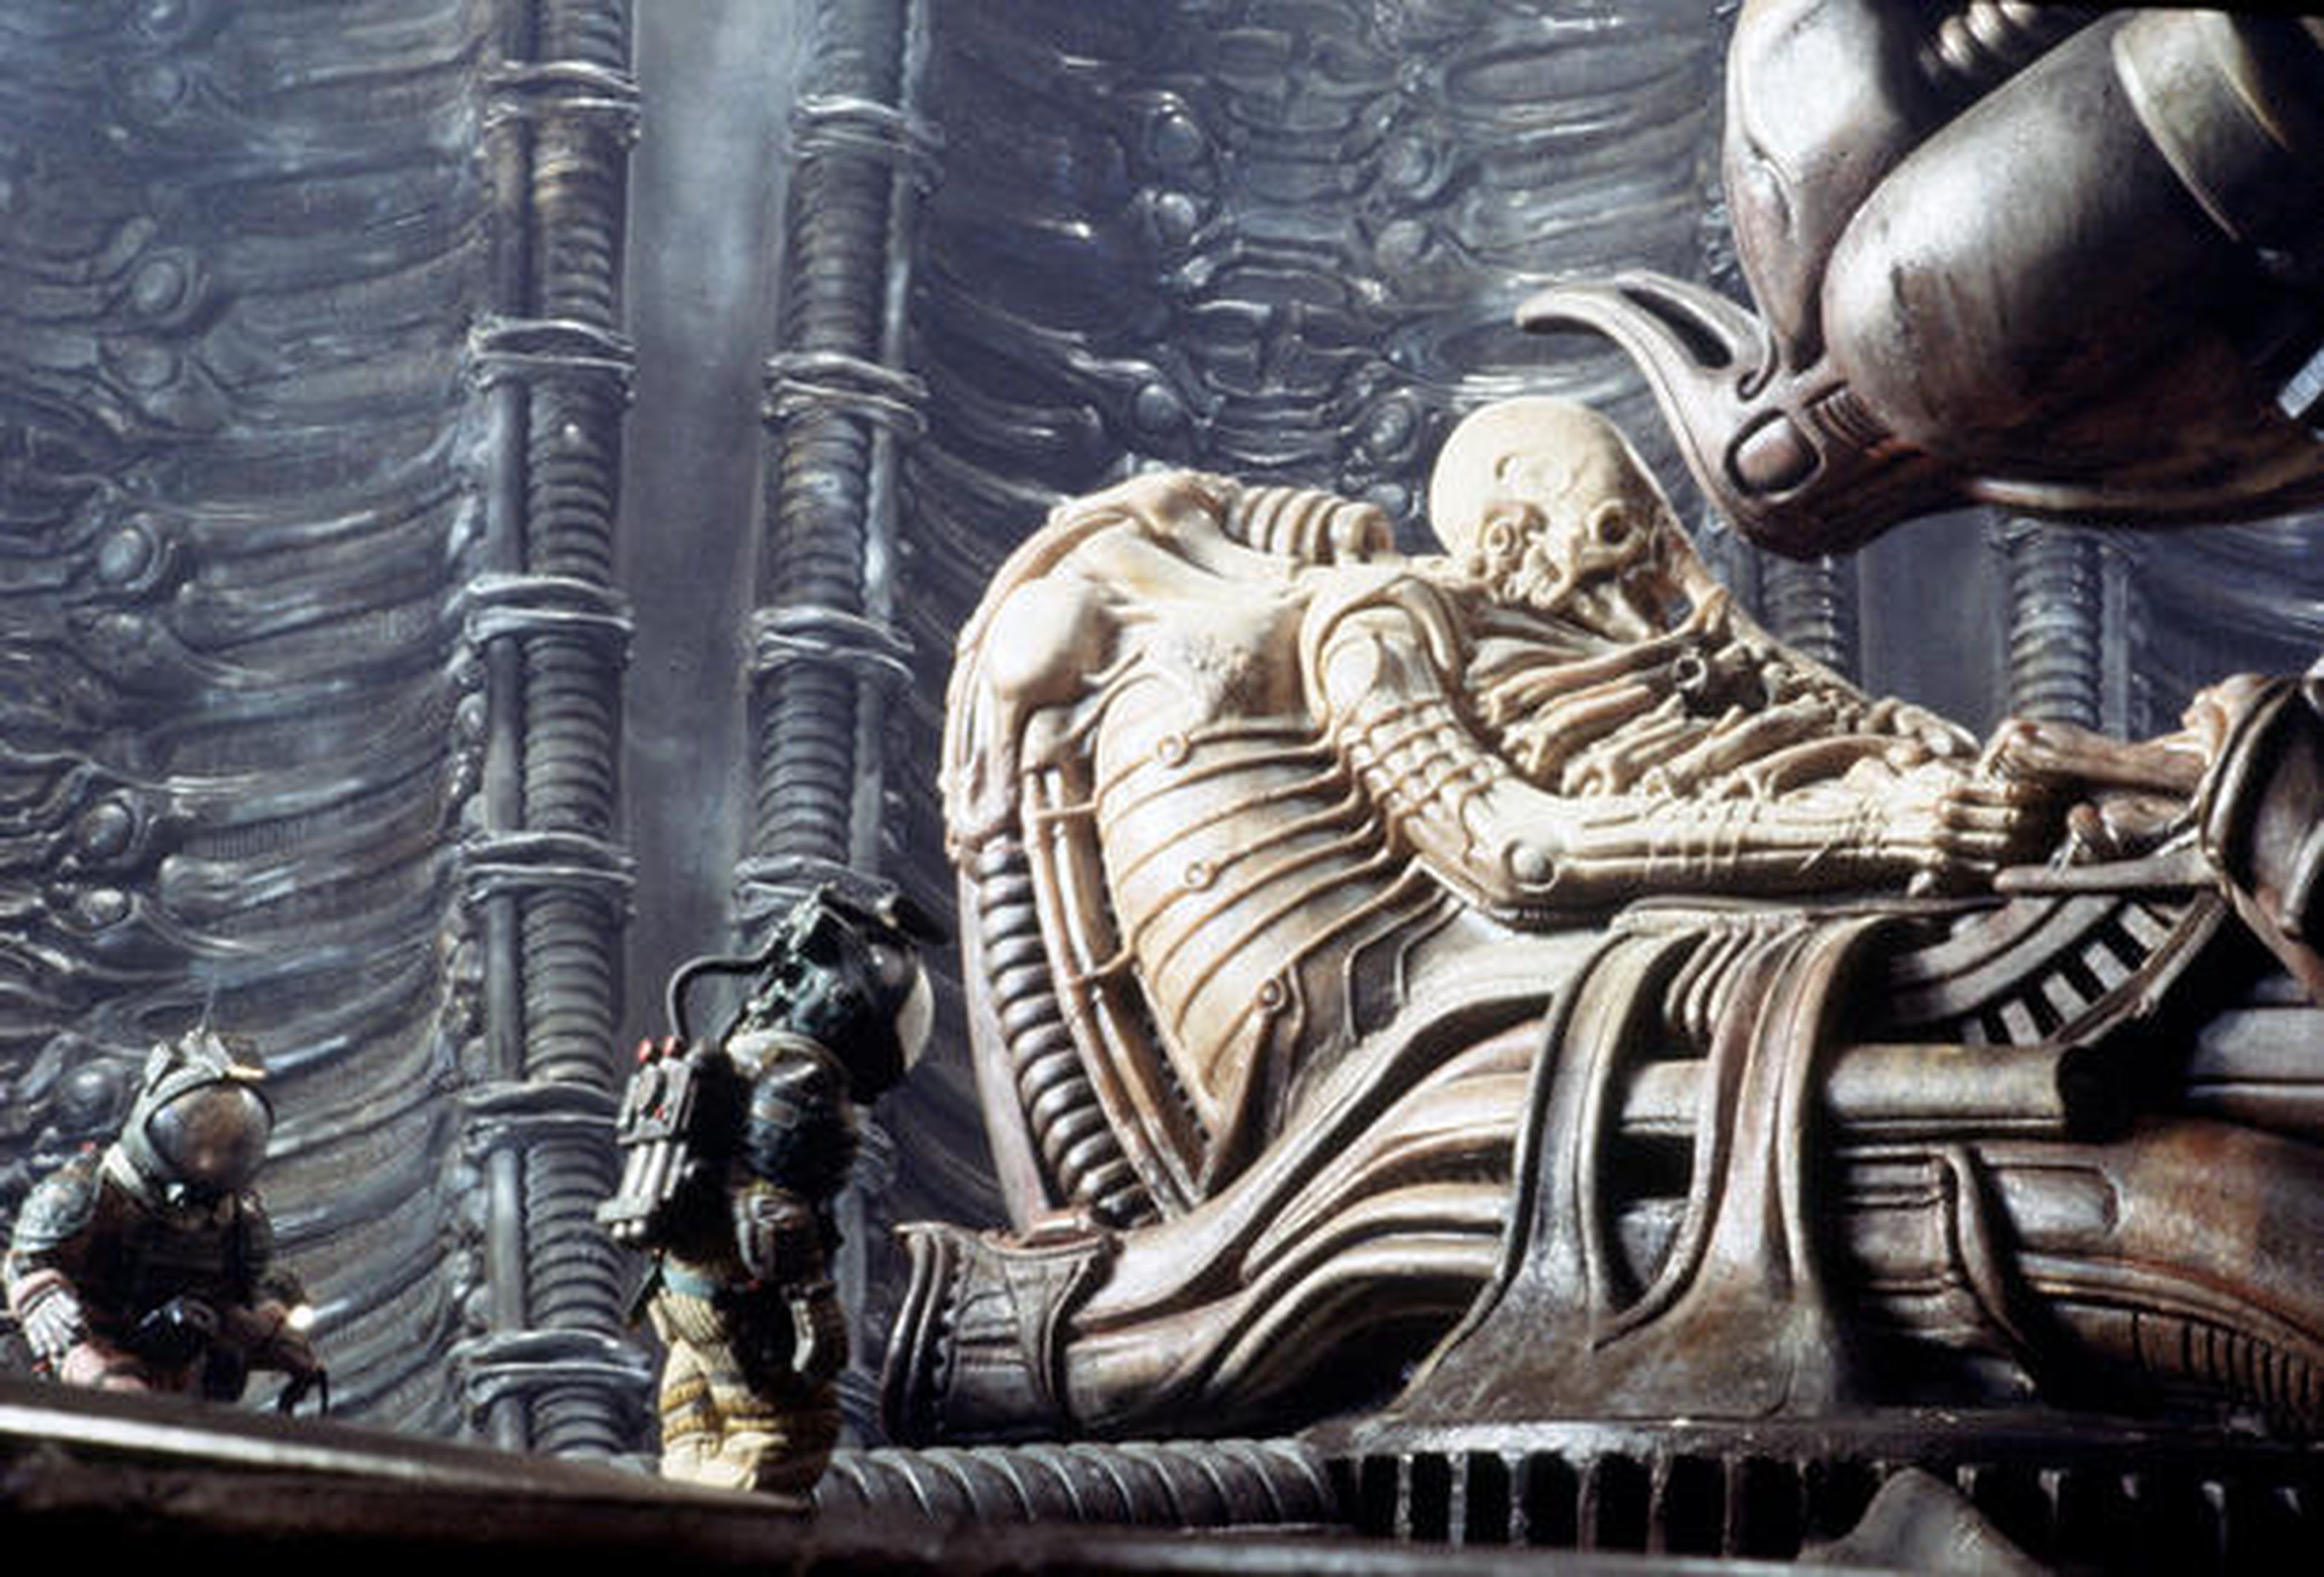 Cine de ciencia ficción: Alien, el octavo pasajero